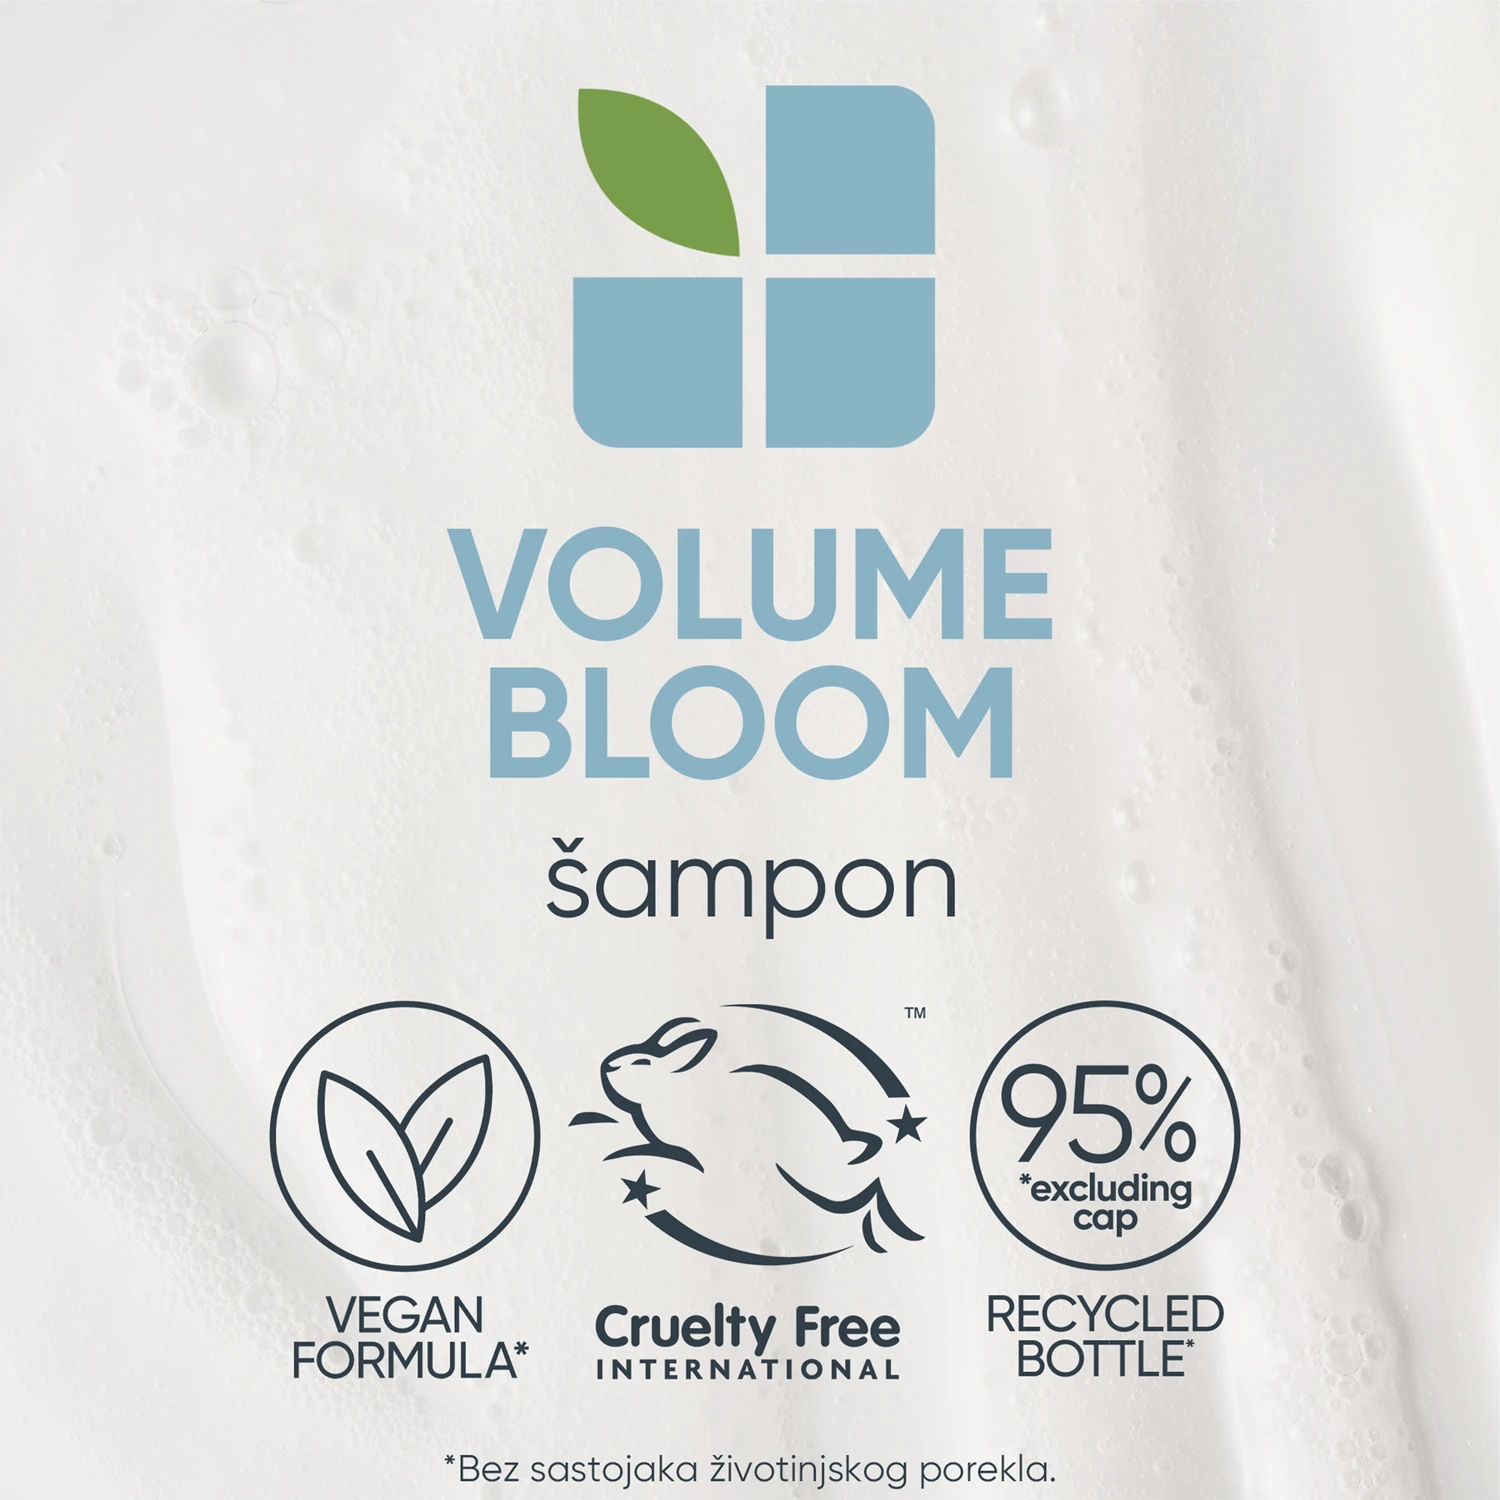 Biolage Volumebloom šampon 1000ml